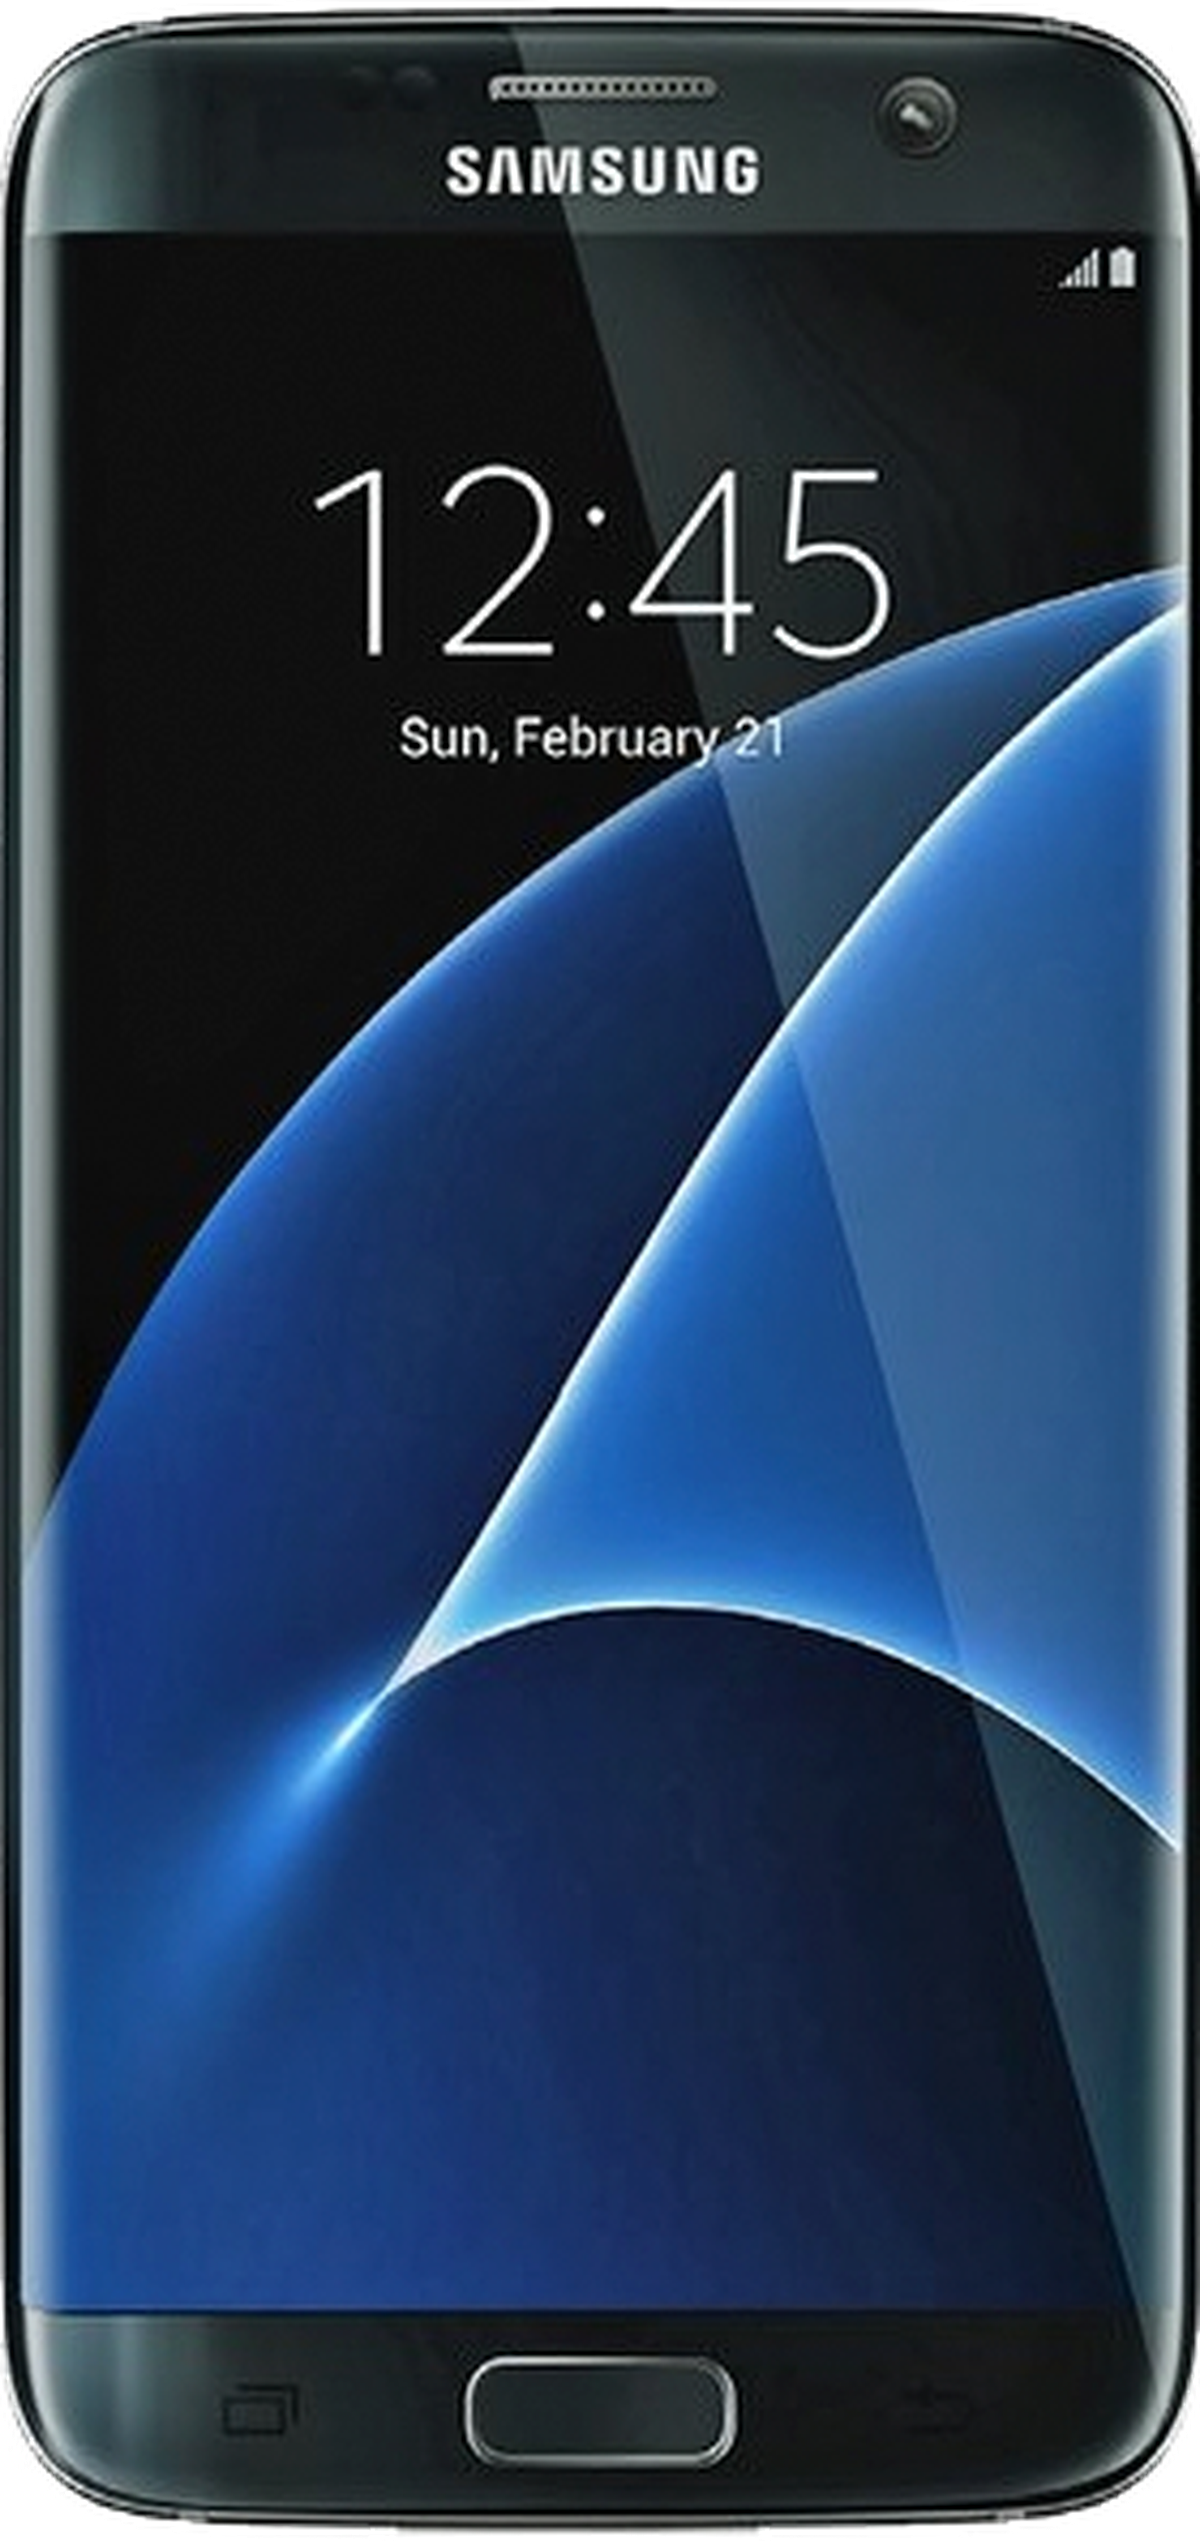 Rodeo Berenjena A bordo Samsung Galaxy S7 Edge: características y valoraciones | Computer Hoy